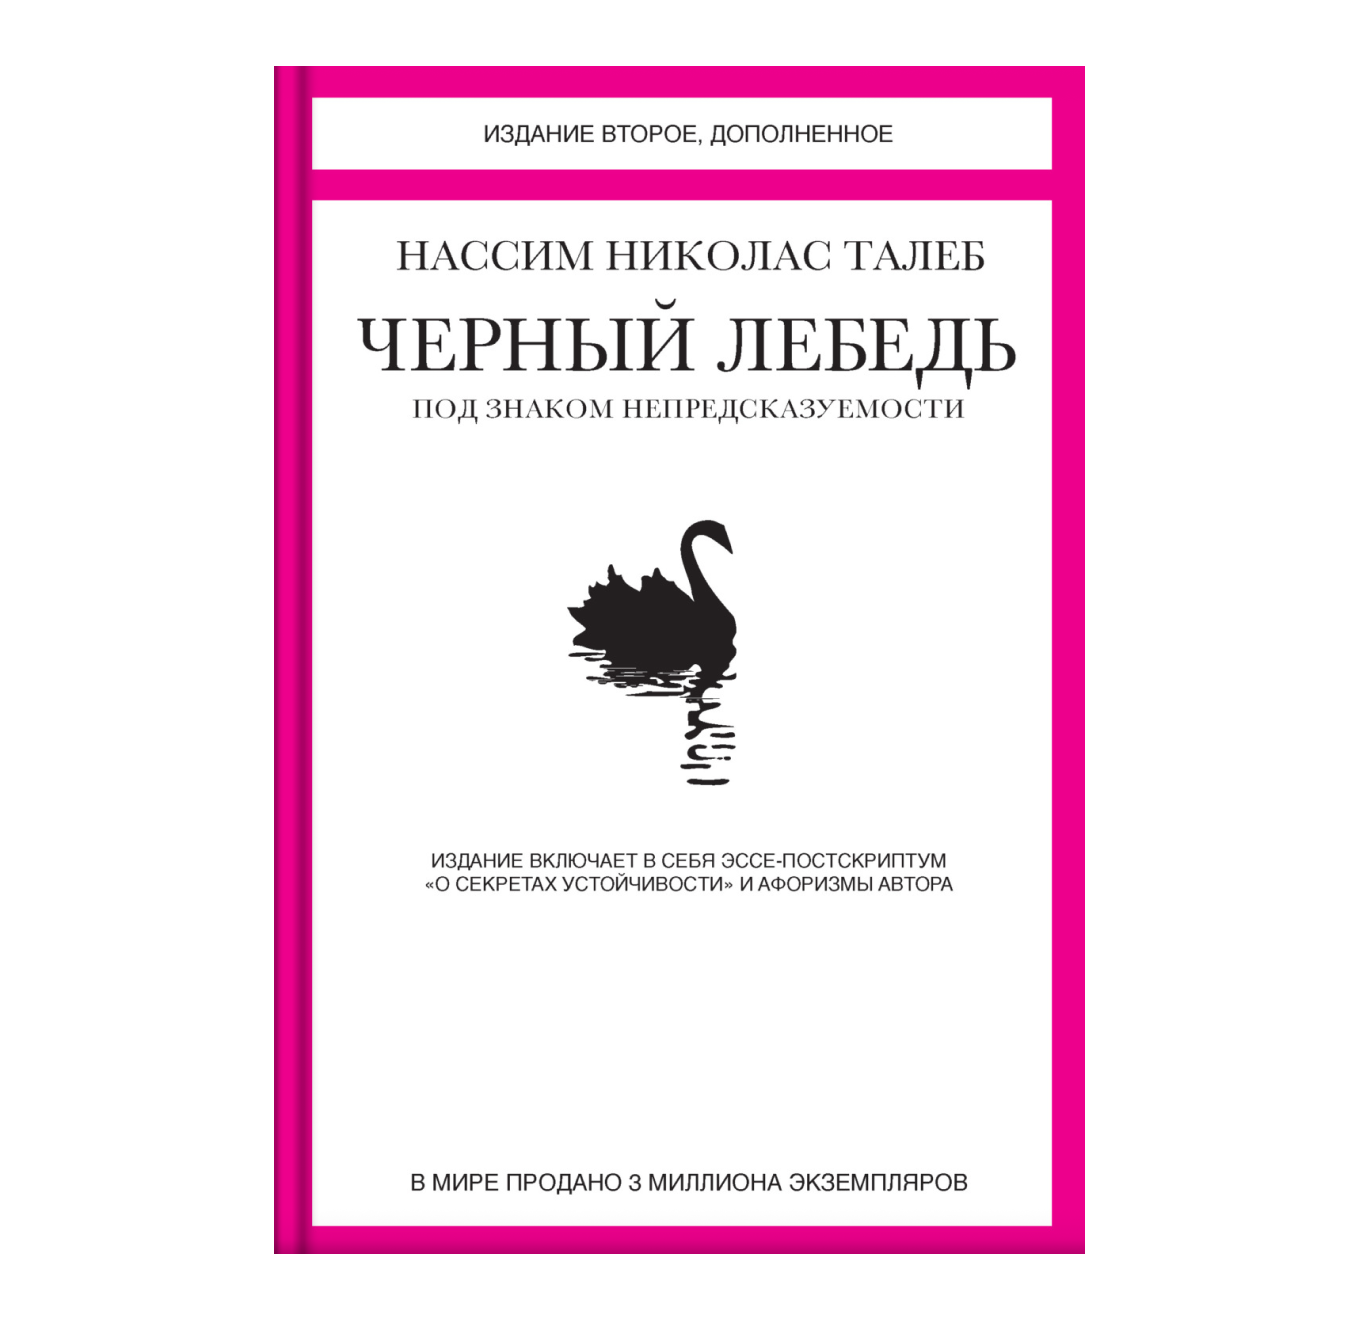 Обложка книги «Черный лебедь» Нассима Талеба